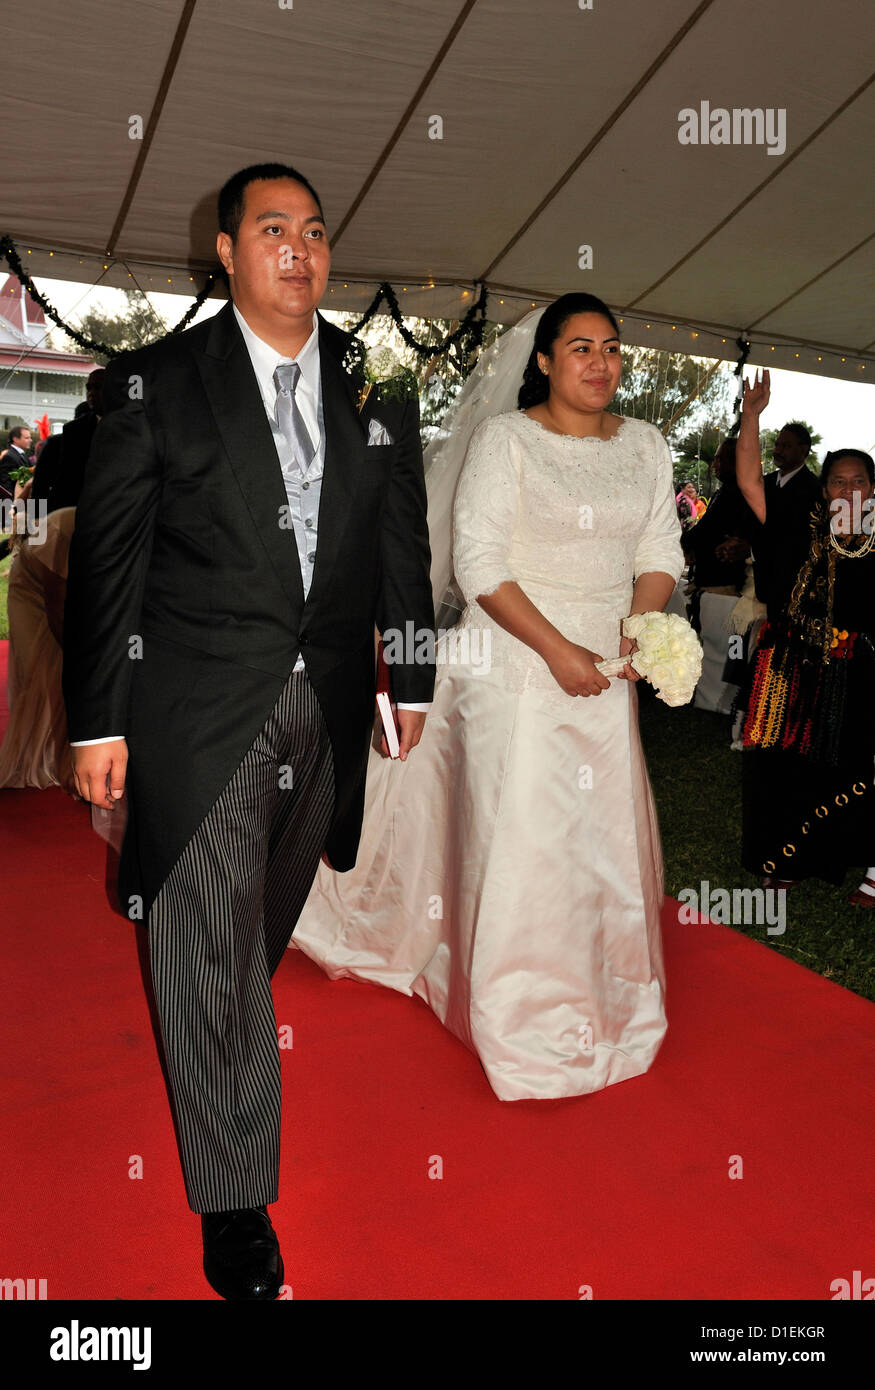 Le Prince Héritier de Tonga et son épouse, la Princesse Sinaitakala ,à pied jusqu'au tapis rouge qu'ils arrivent à leur réception de mariage Banque D'Images